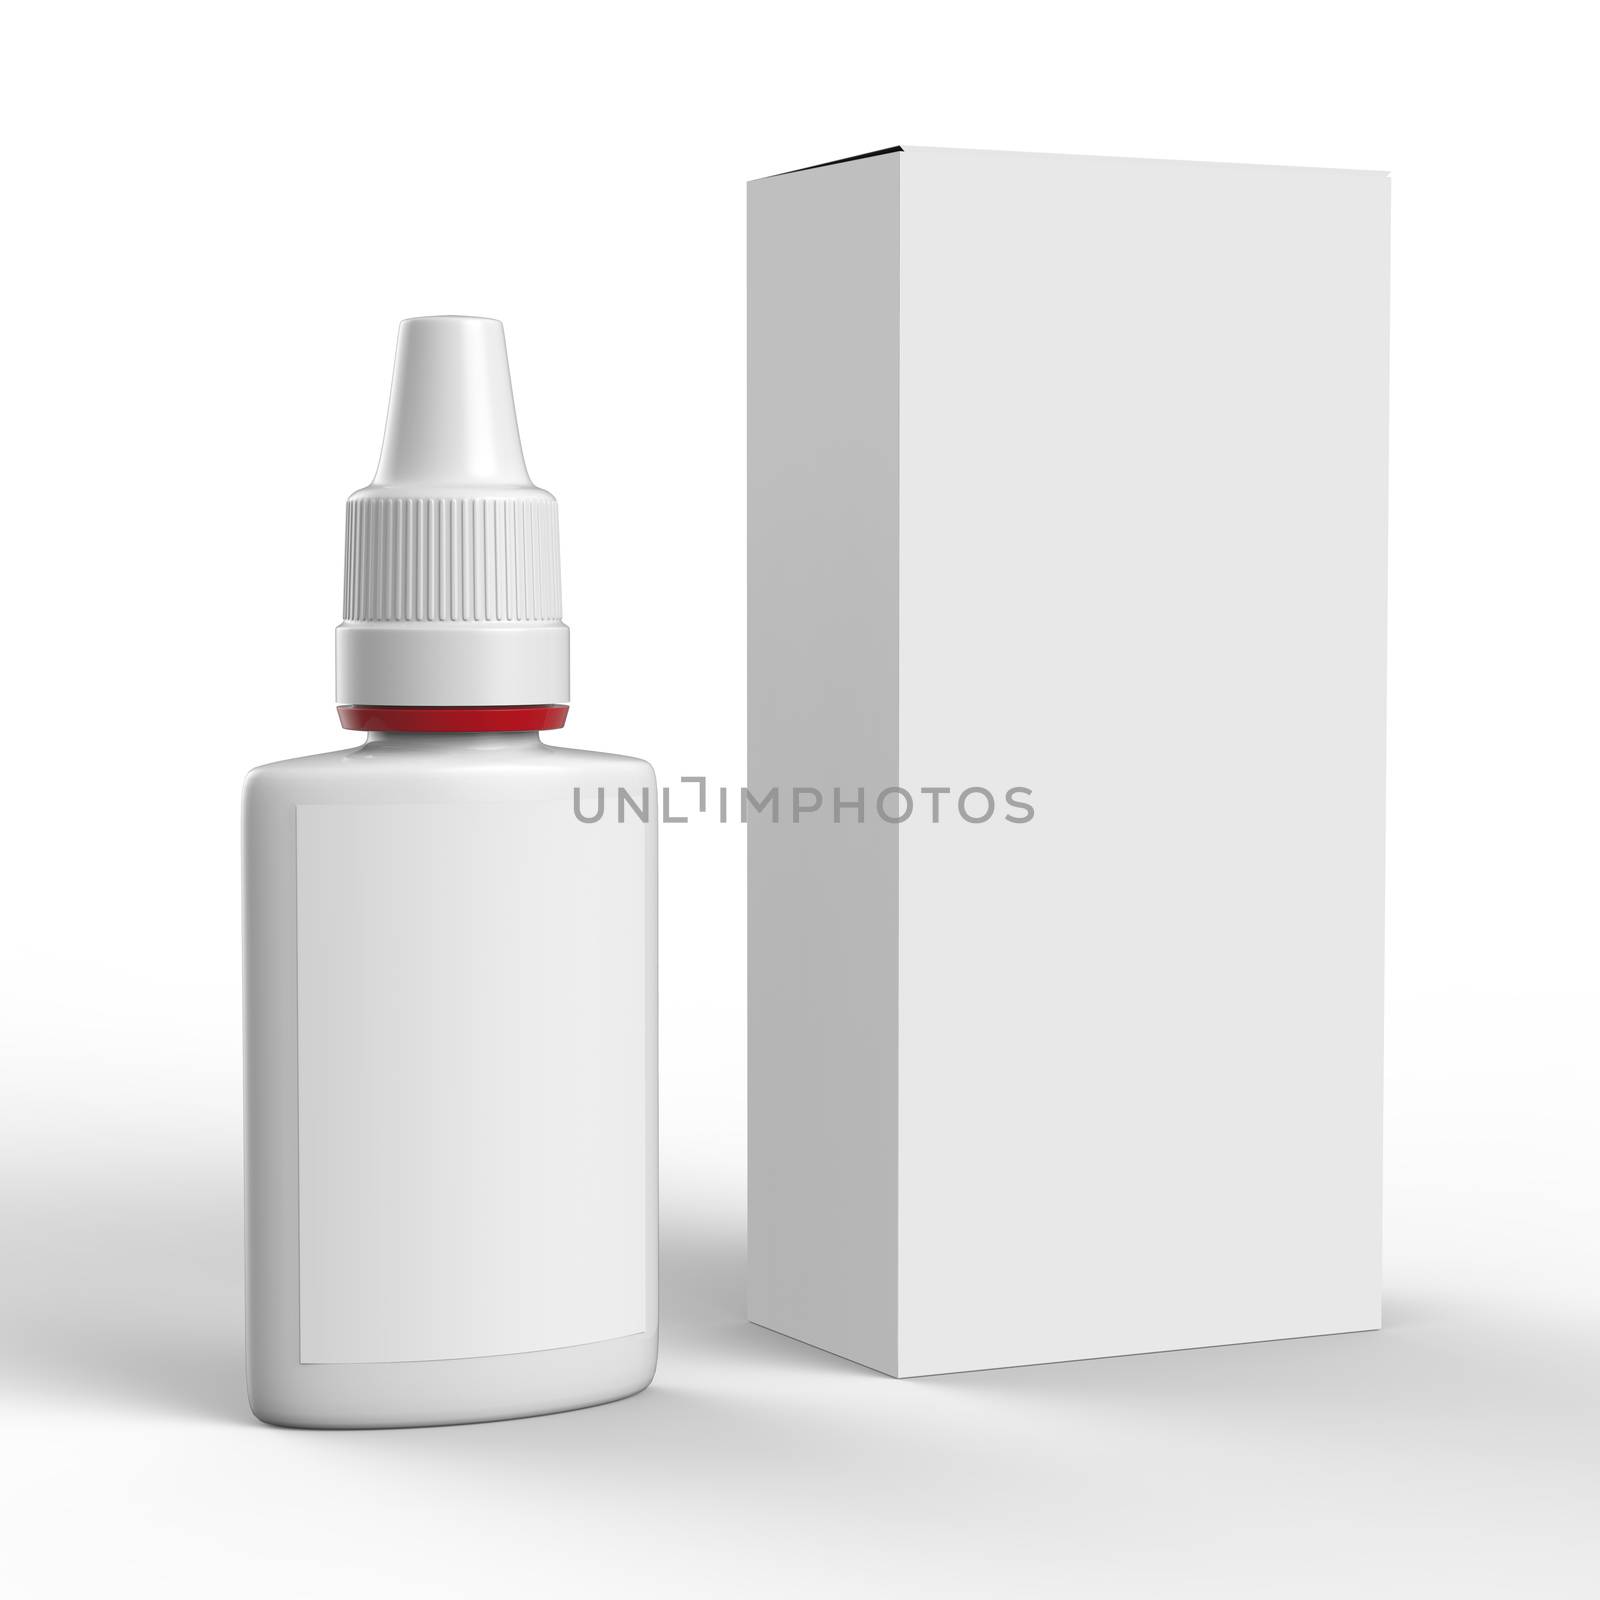 Nasal Spray Package by clusterx